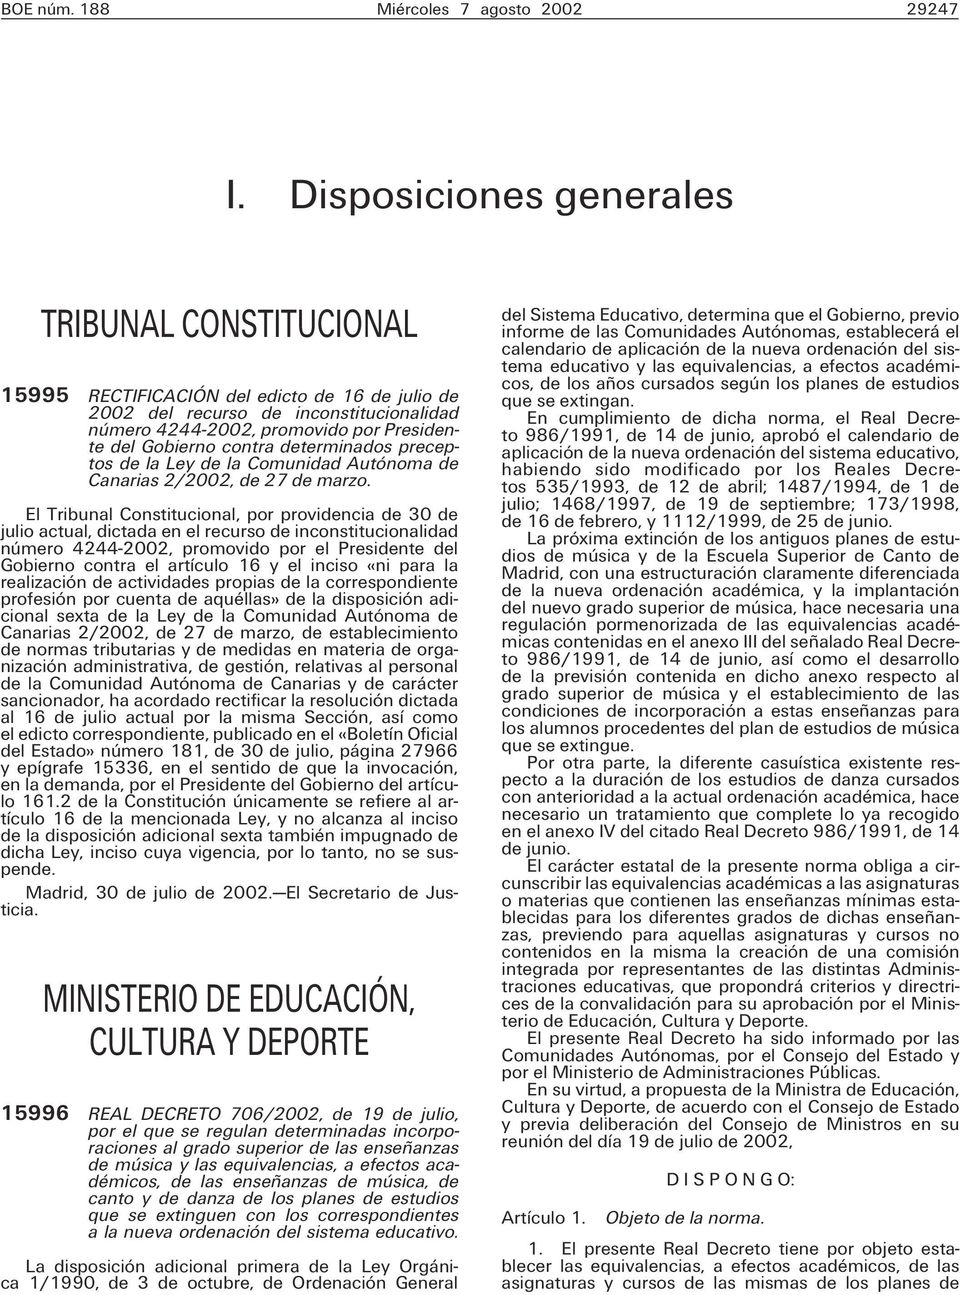 contra determinados preceptos de la Ley de la Comunidad Autónoma de Canarias 2/2002, de 27 de marzo.